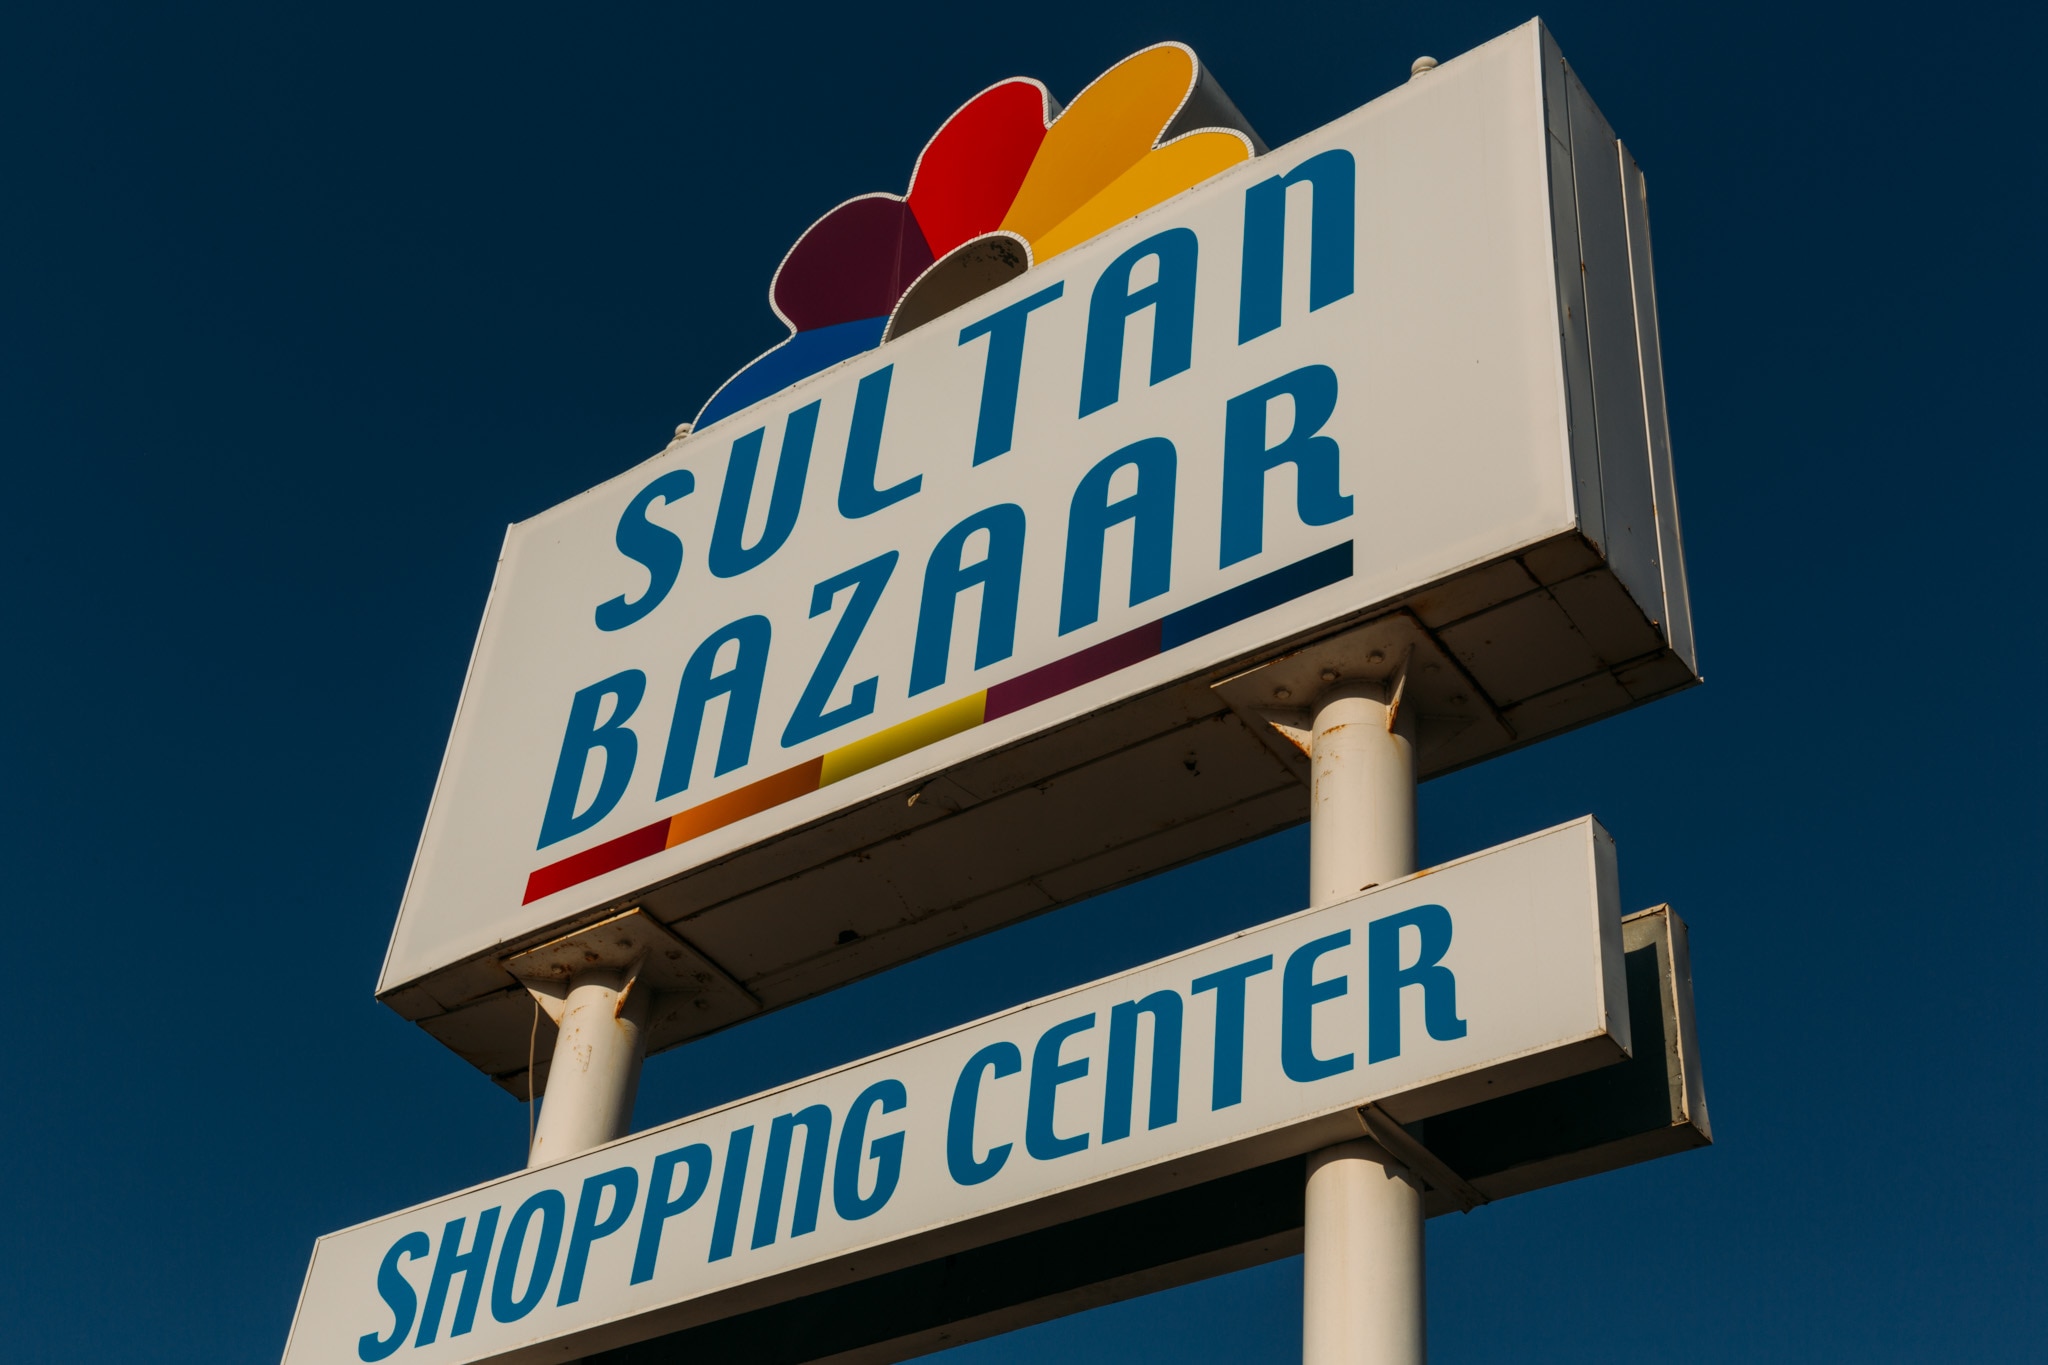 Sultan Bazaar